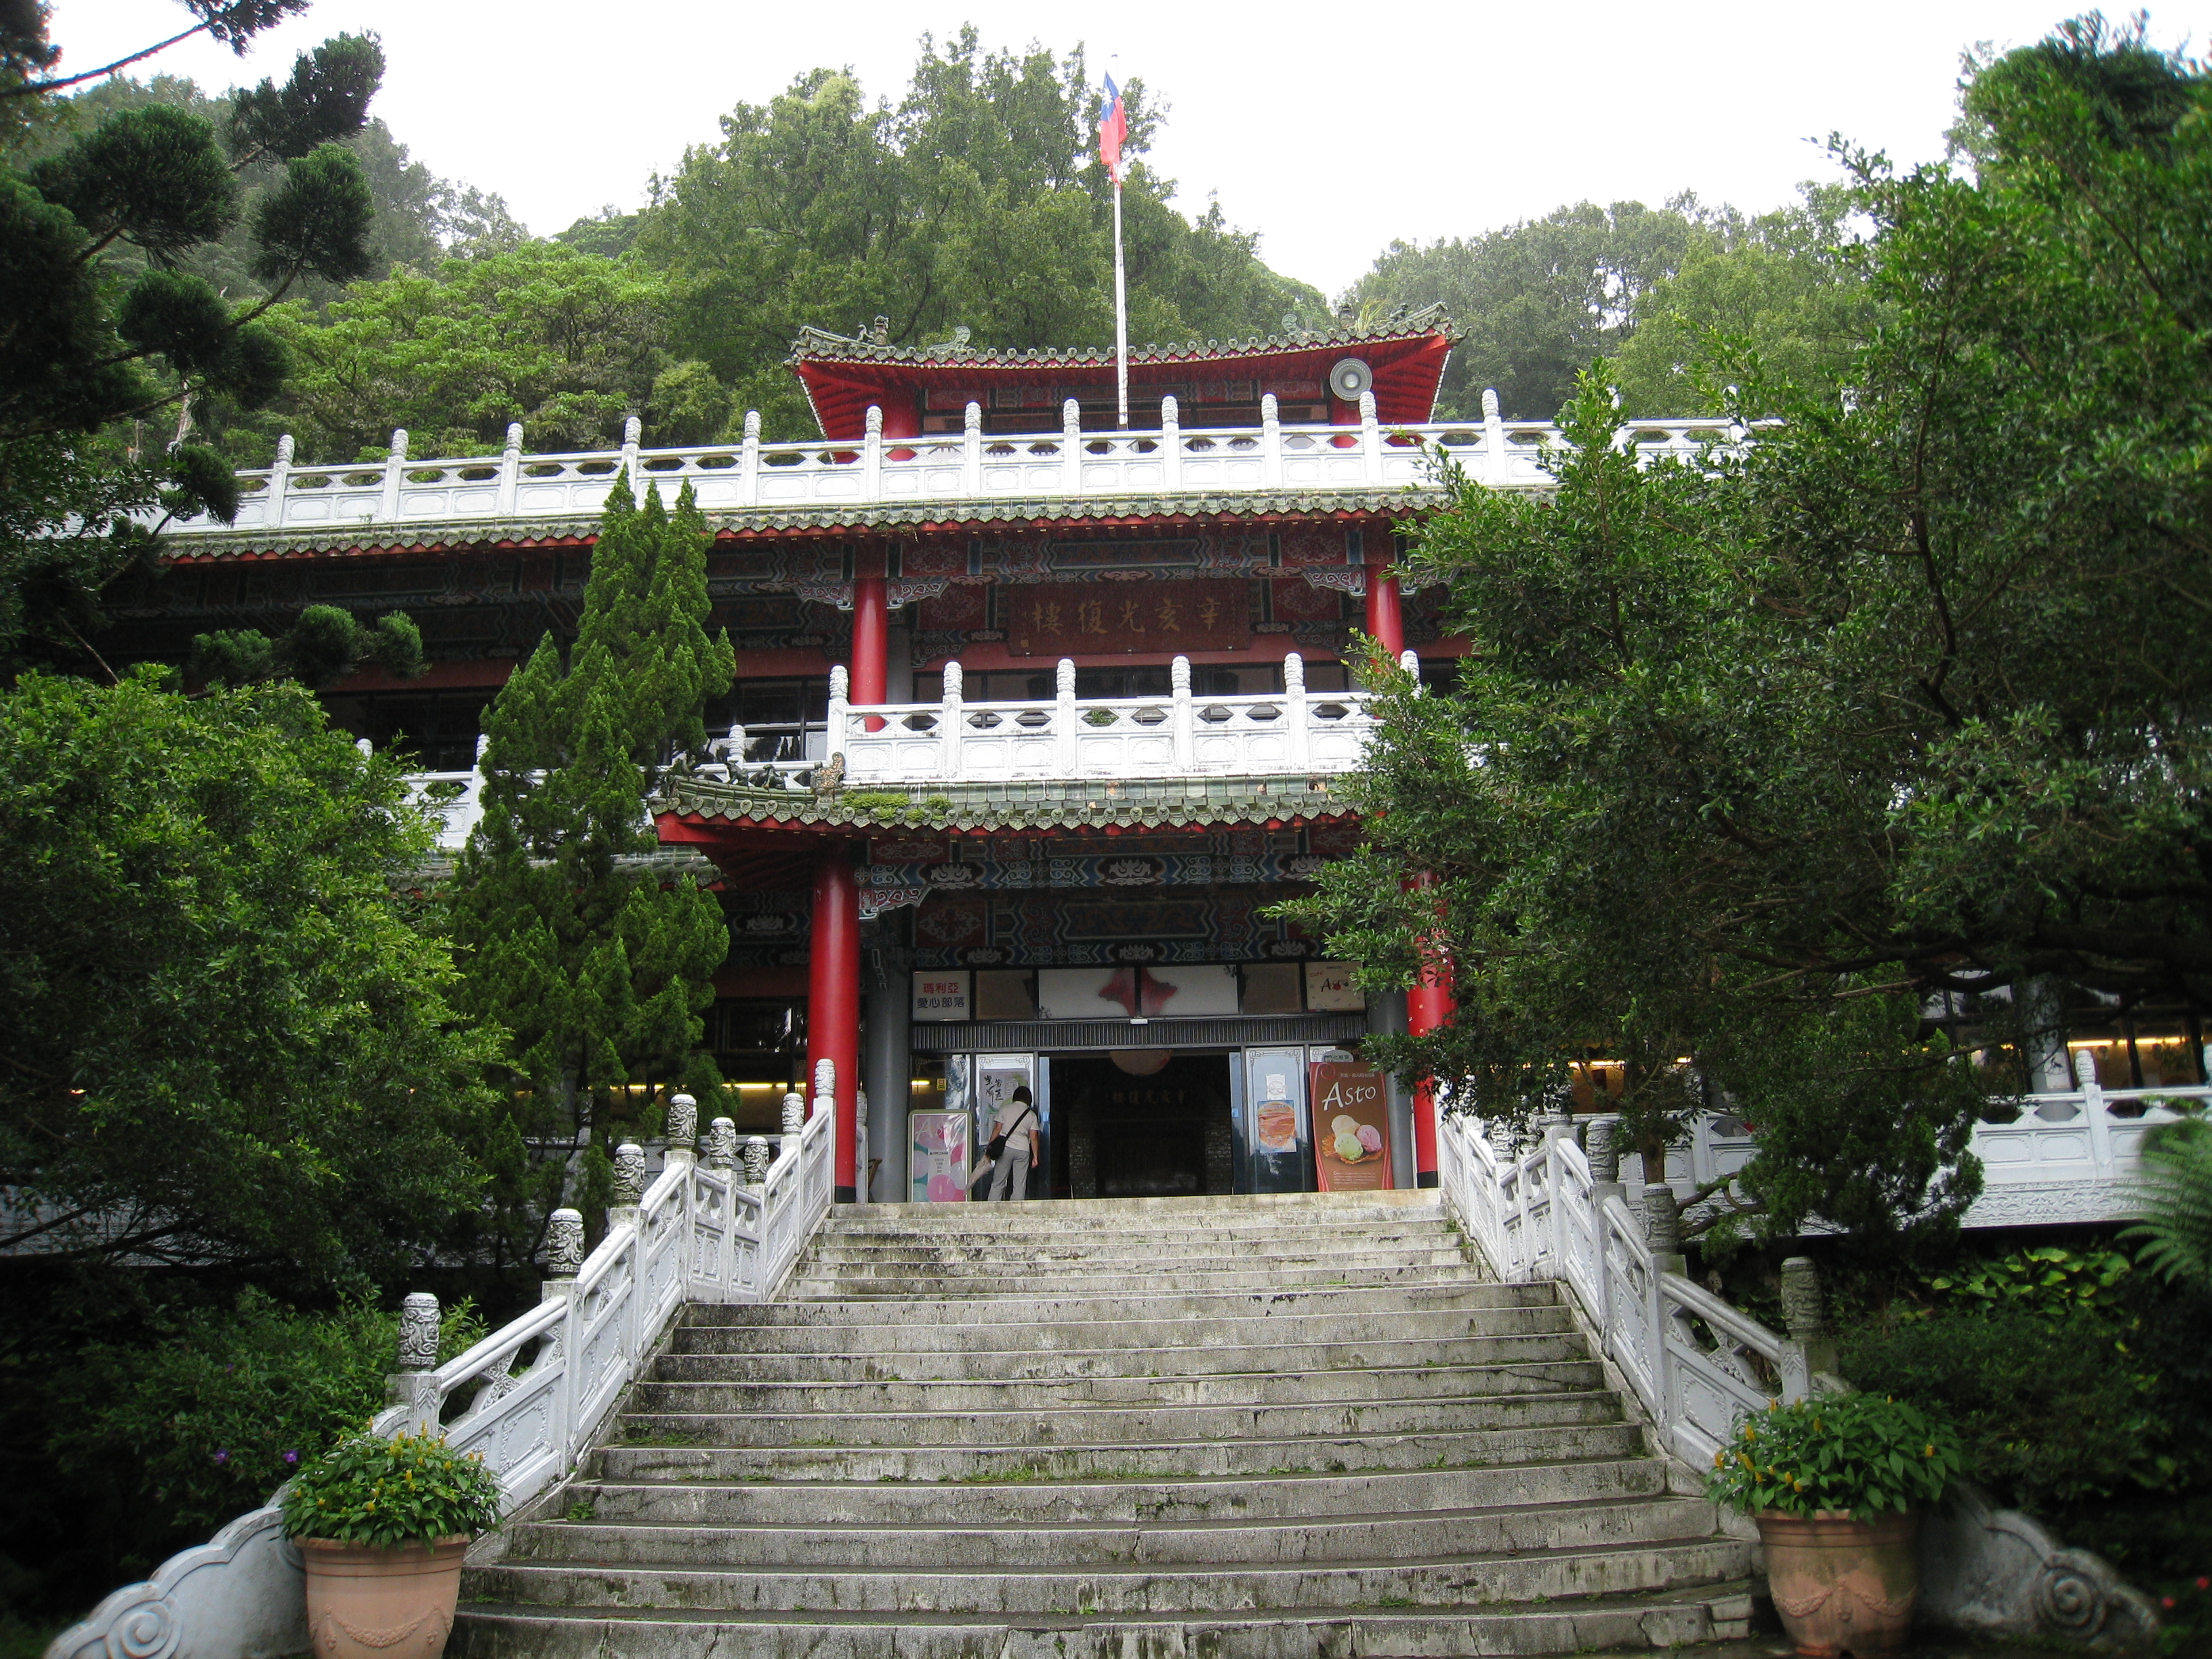 阳明山国家公园是台湾离市区最近的一座国家公园,园内种满了梅,樱,桃